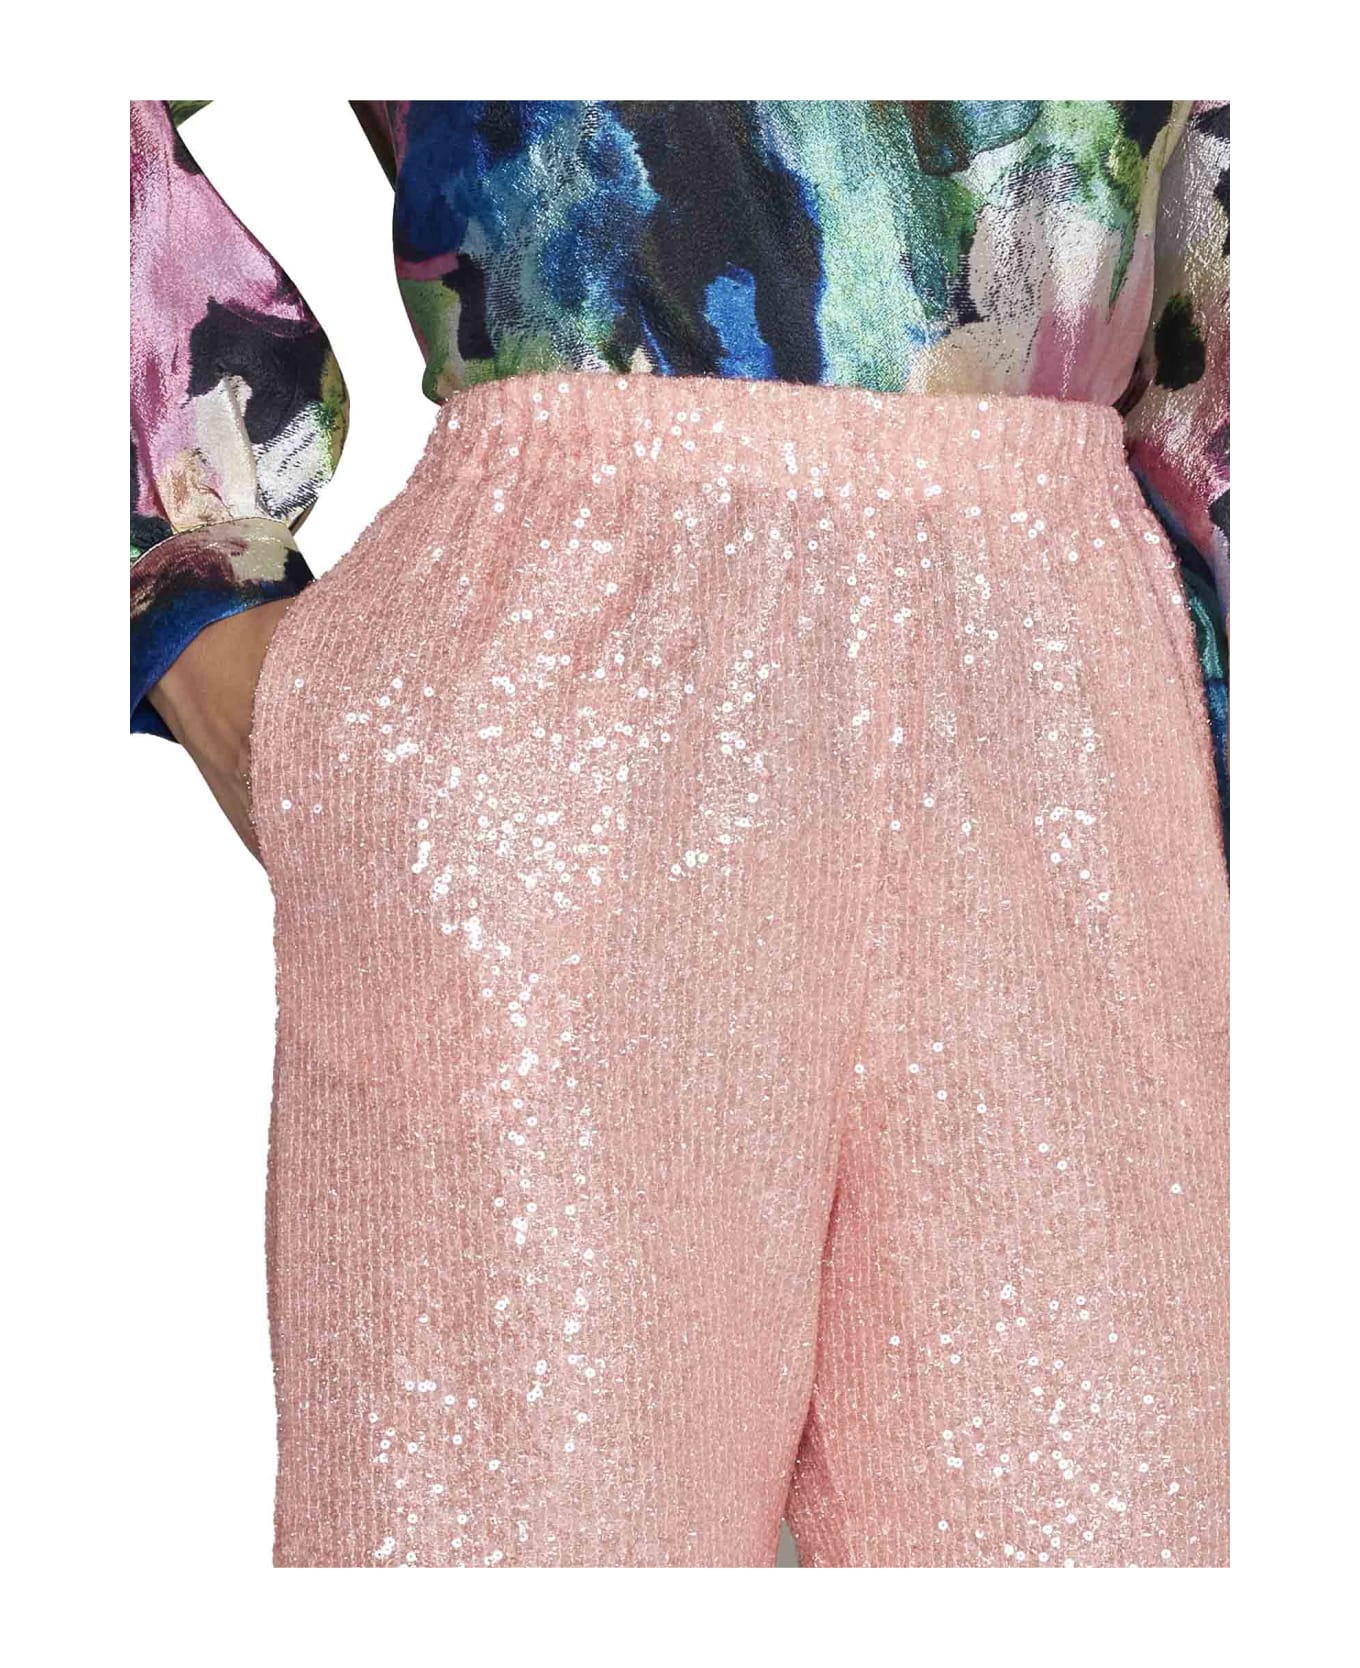 Stine Goya Pants - Blush pink